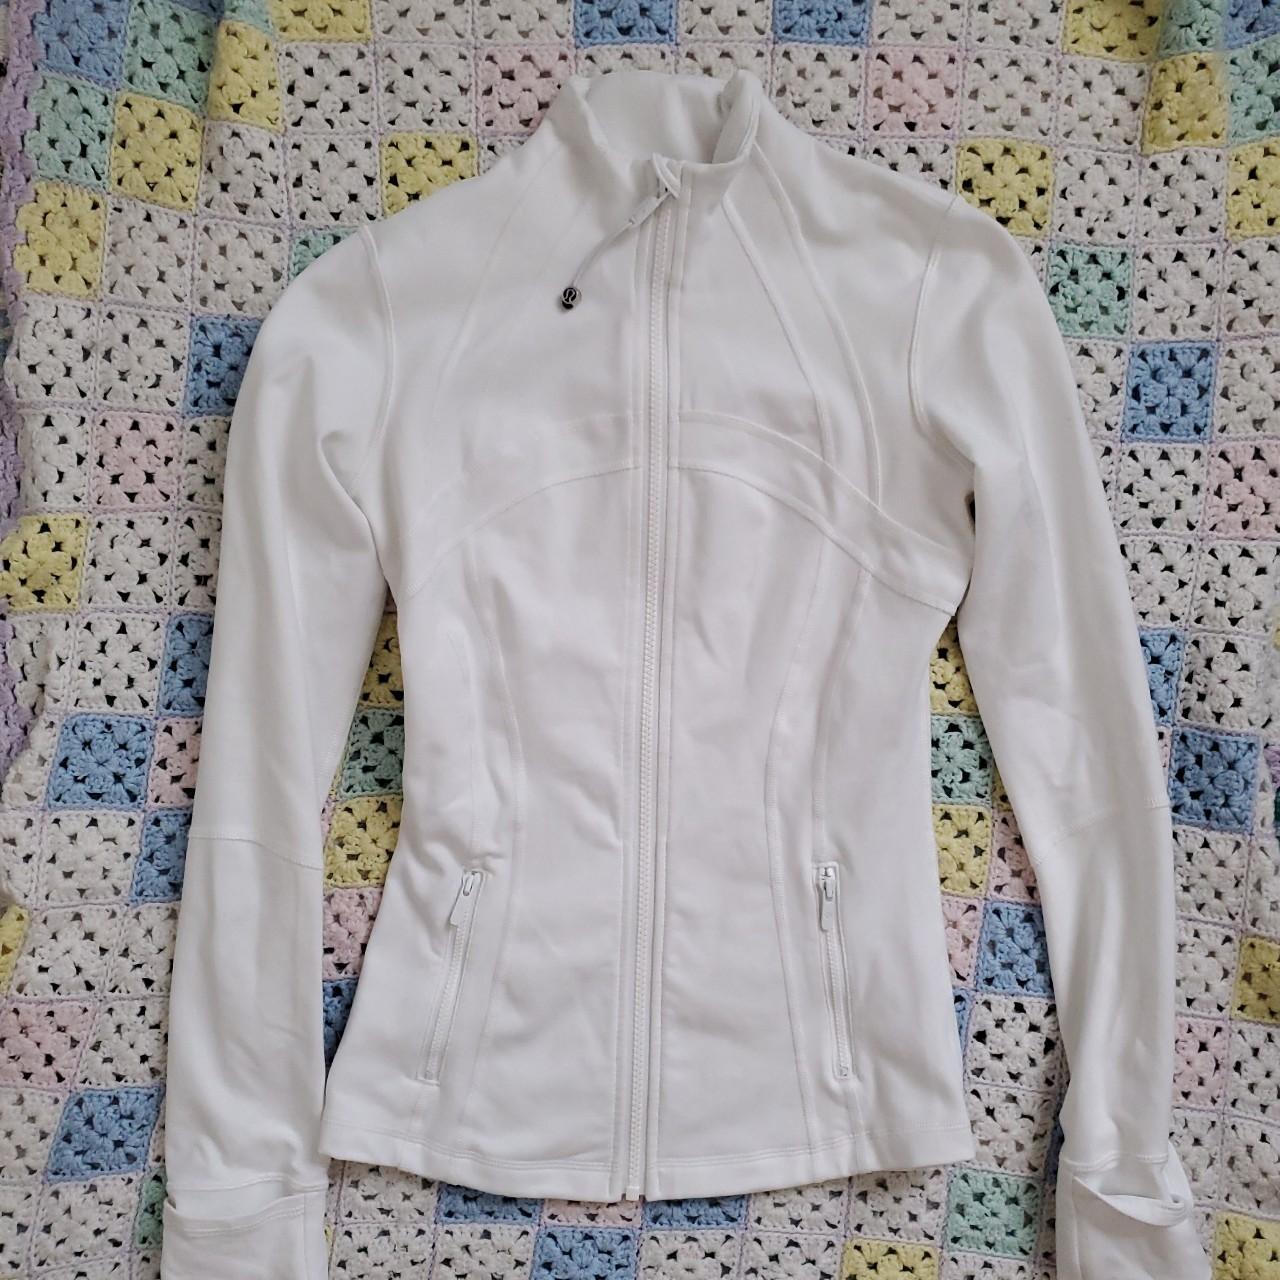 Lululemon Define jacket White Used Size 6/8 - Depop